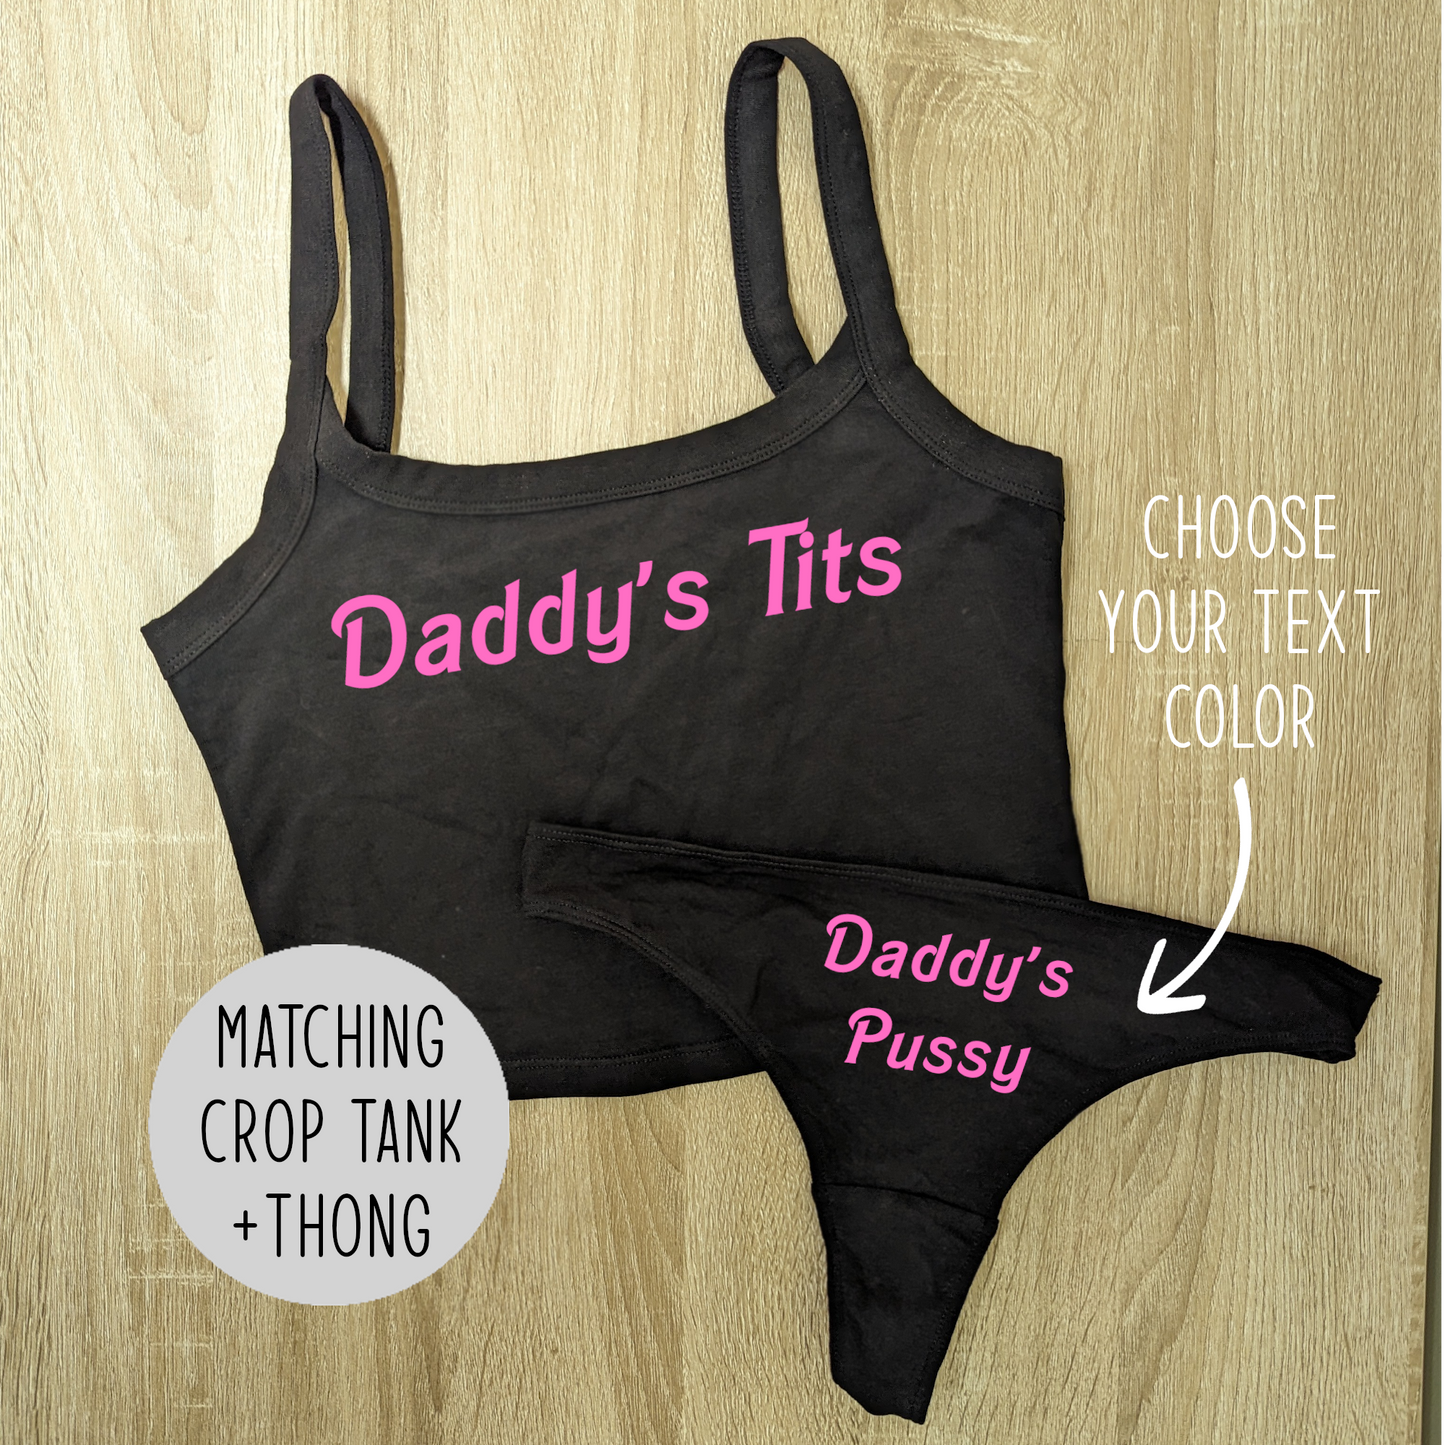 Daddys Tits BDSM Set DDLG Kink Lingerie